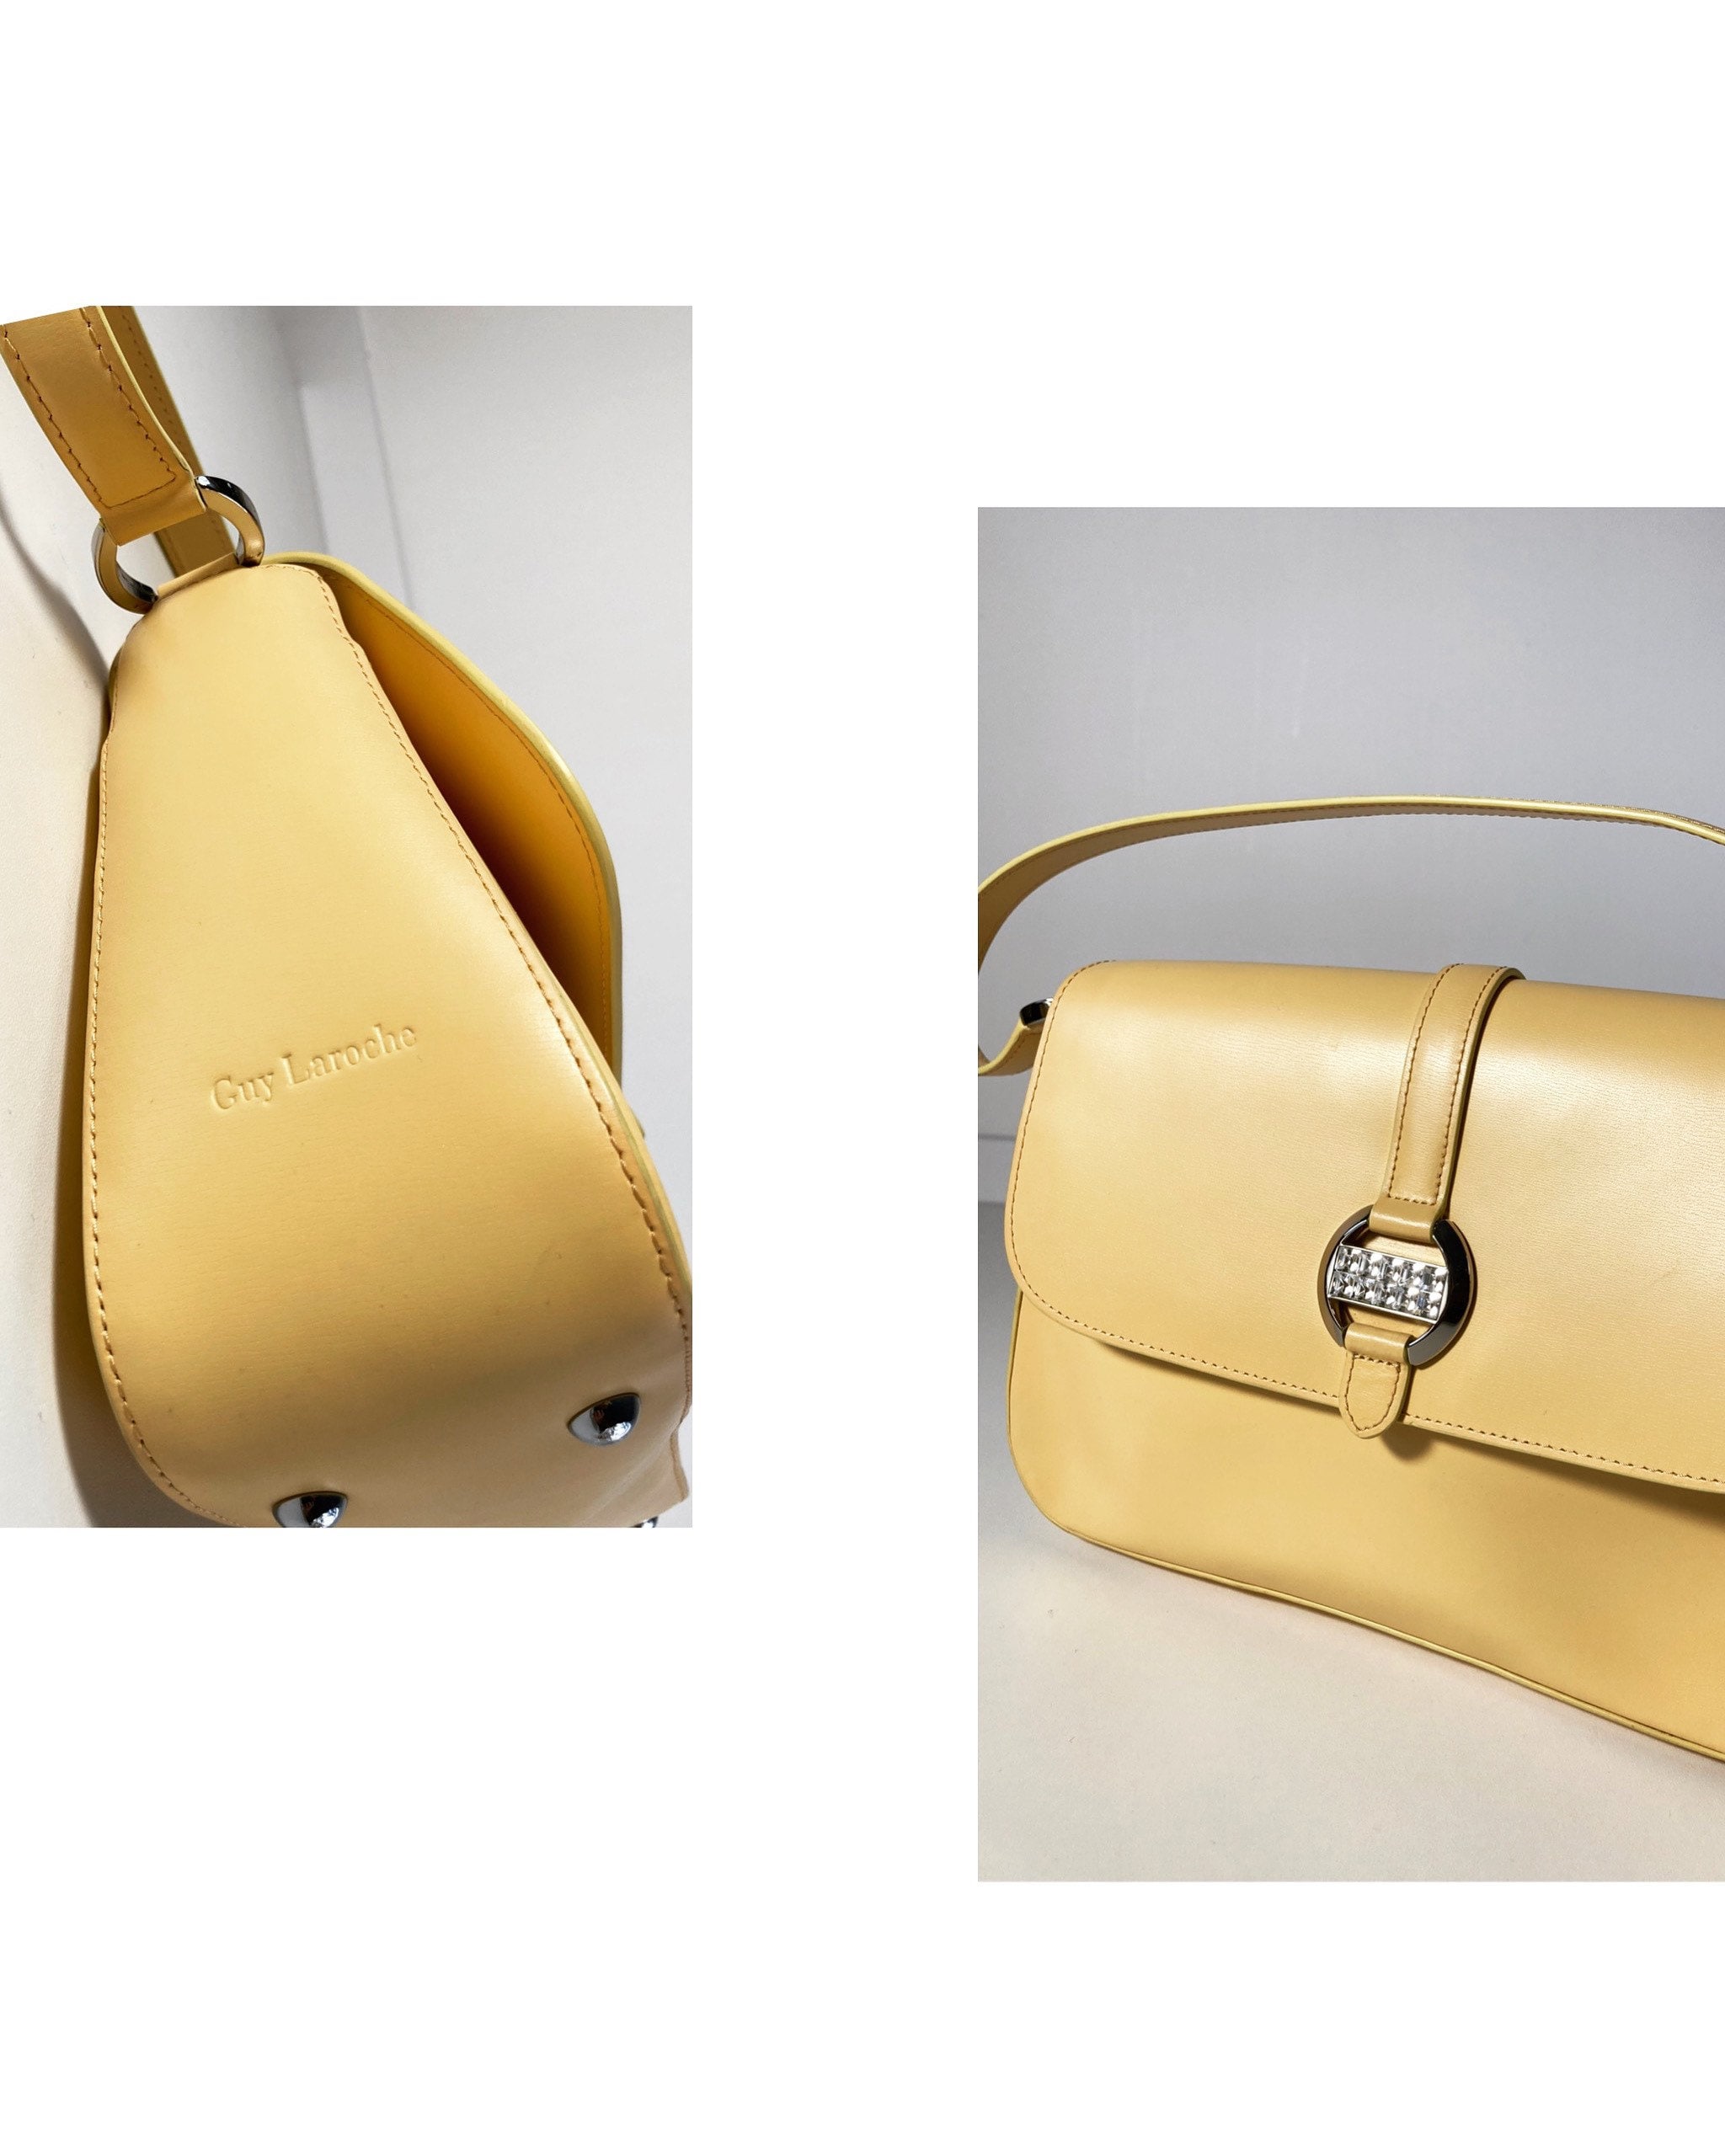 Vintage Purse GUY LAROCHE Handbag Vintage Yellow Top Handle 